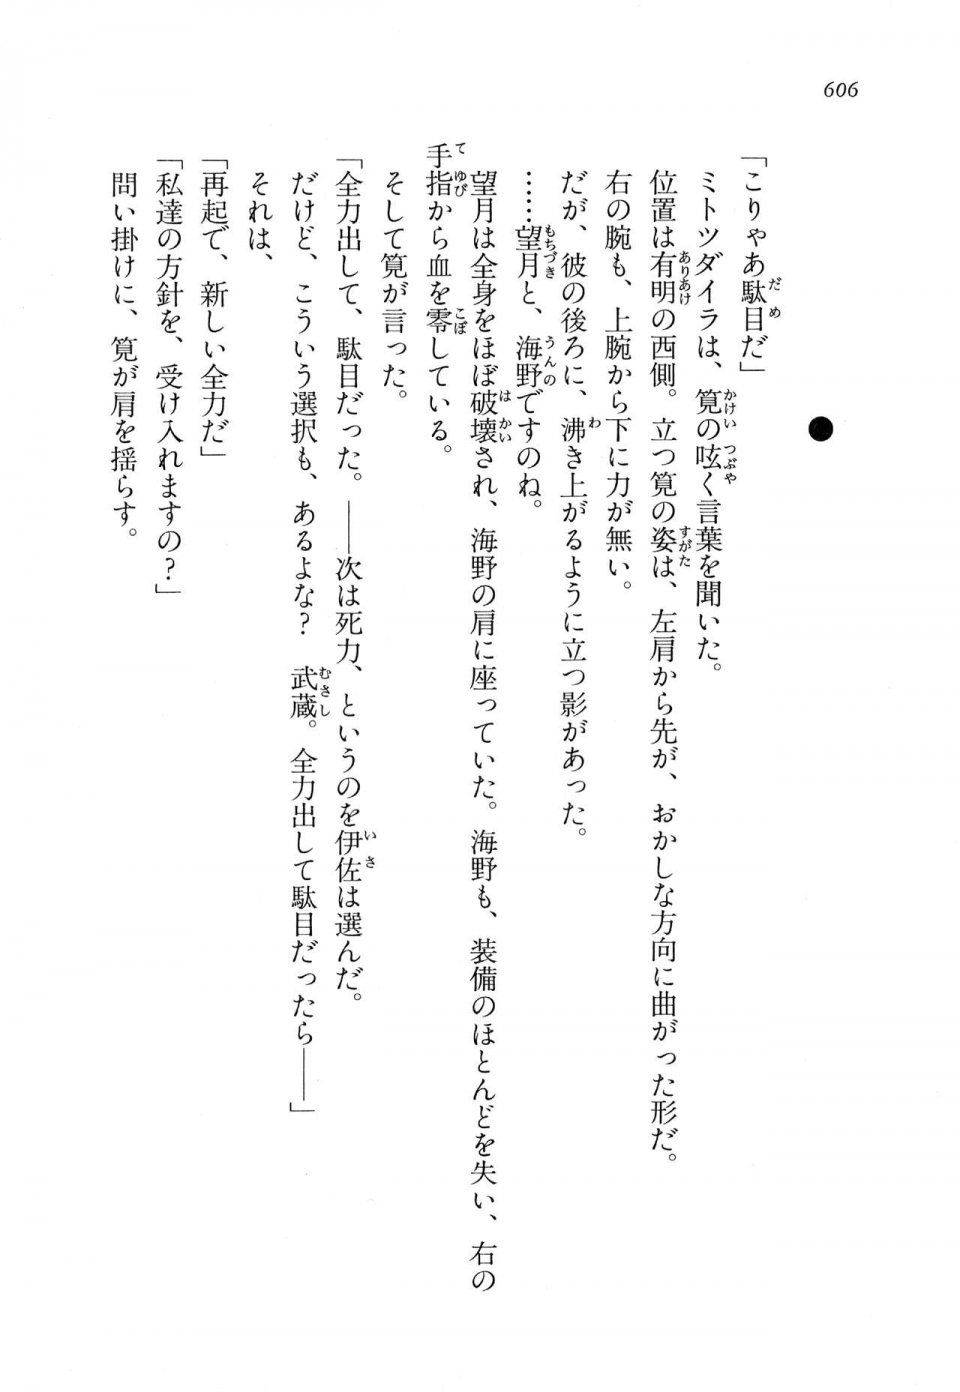 Kyoukai Senjou no Horizon LN Vol 11(5A) - Photo #606